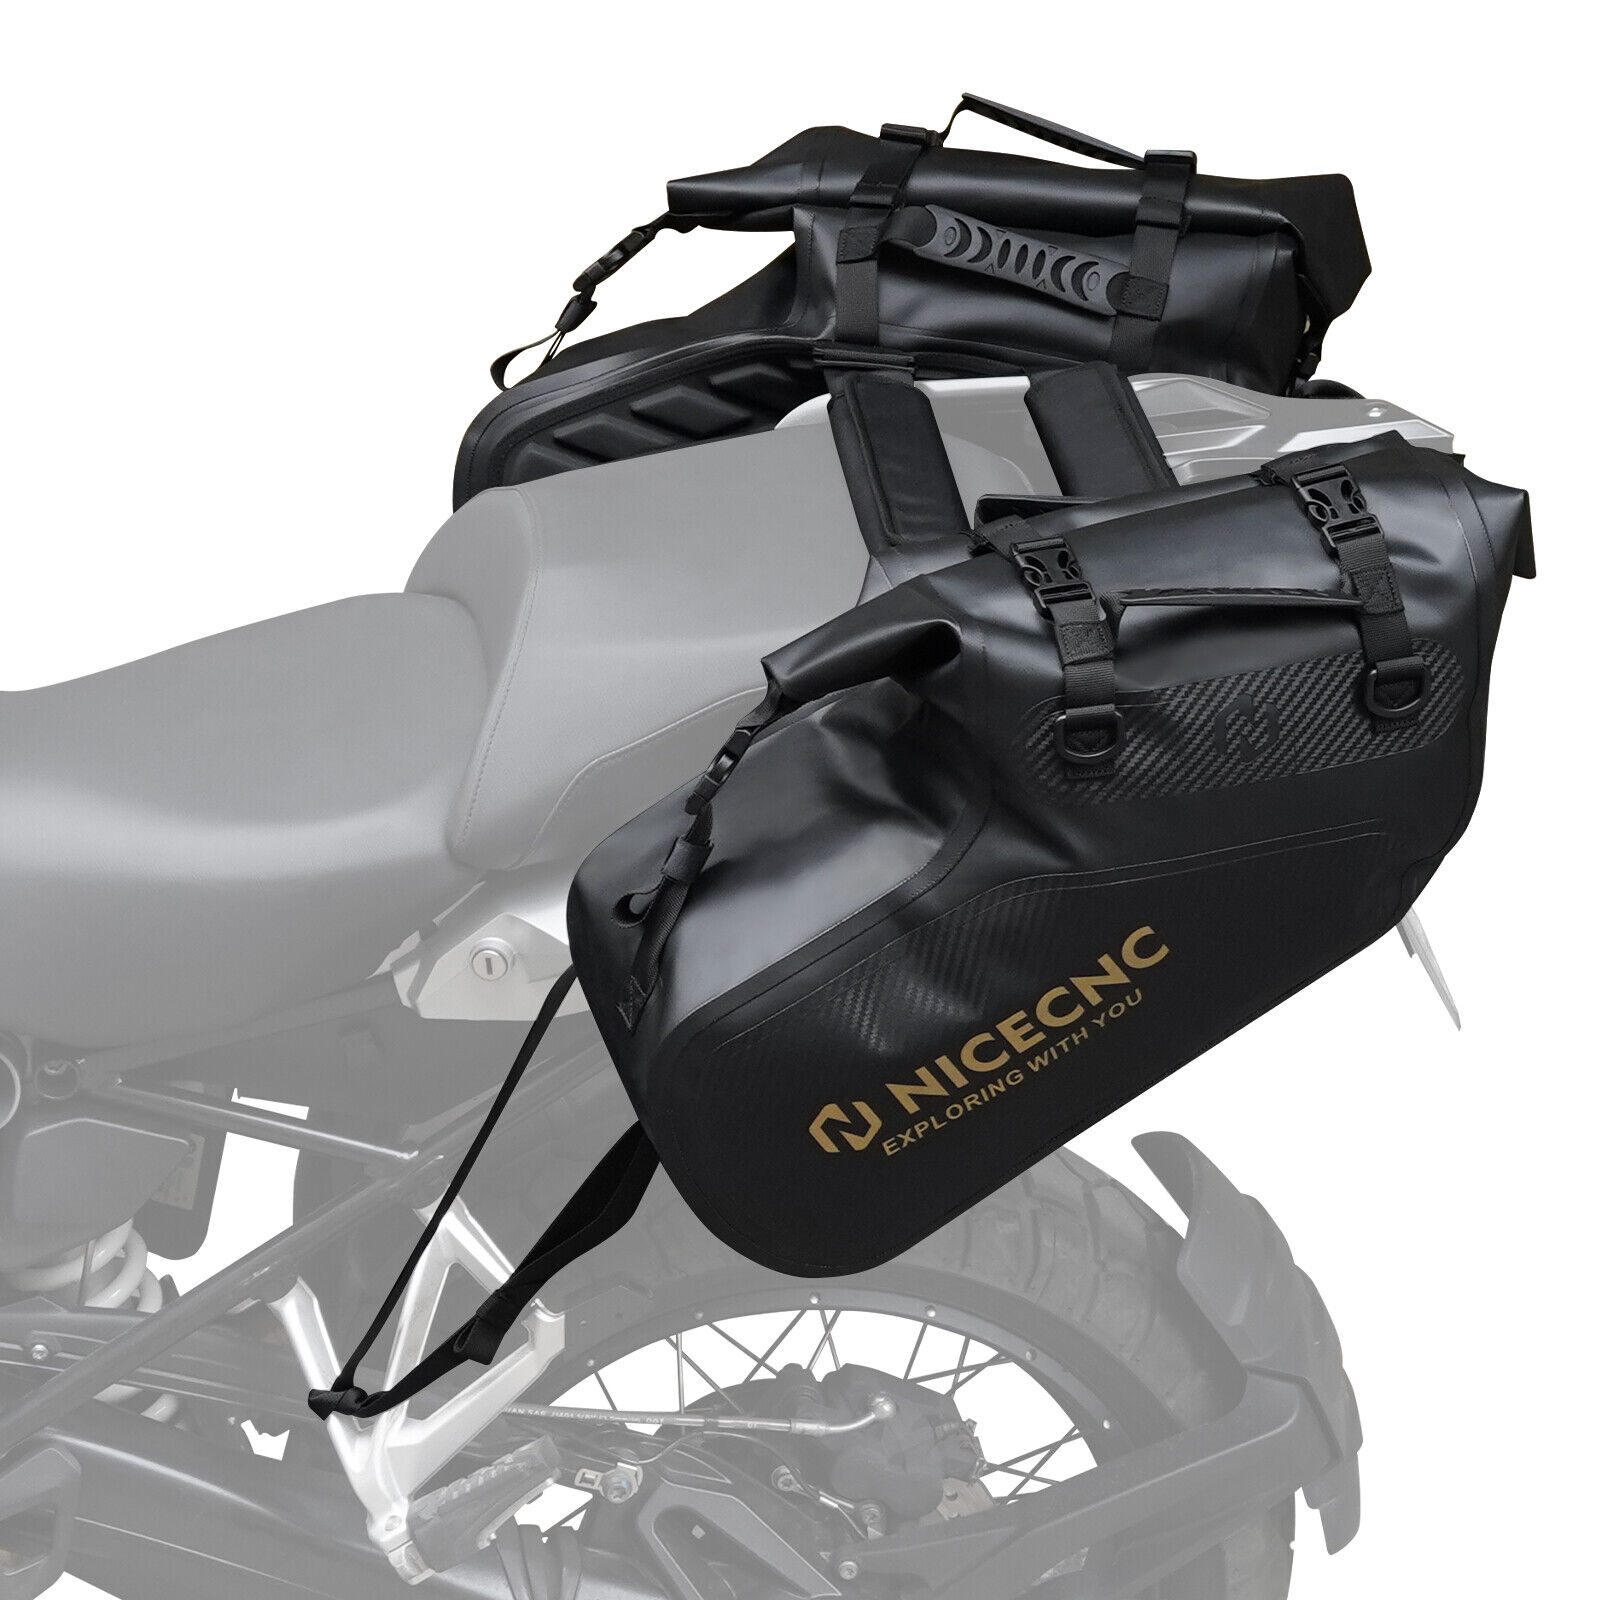 28L Pair Waterproof Motorcycle Saddlebags Saddle Panniers Rear Side Bags Black